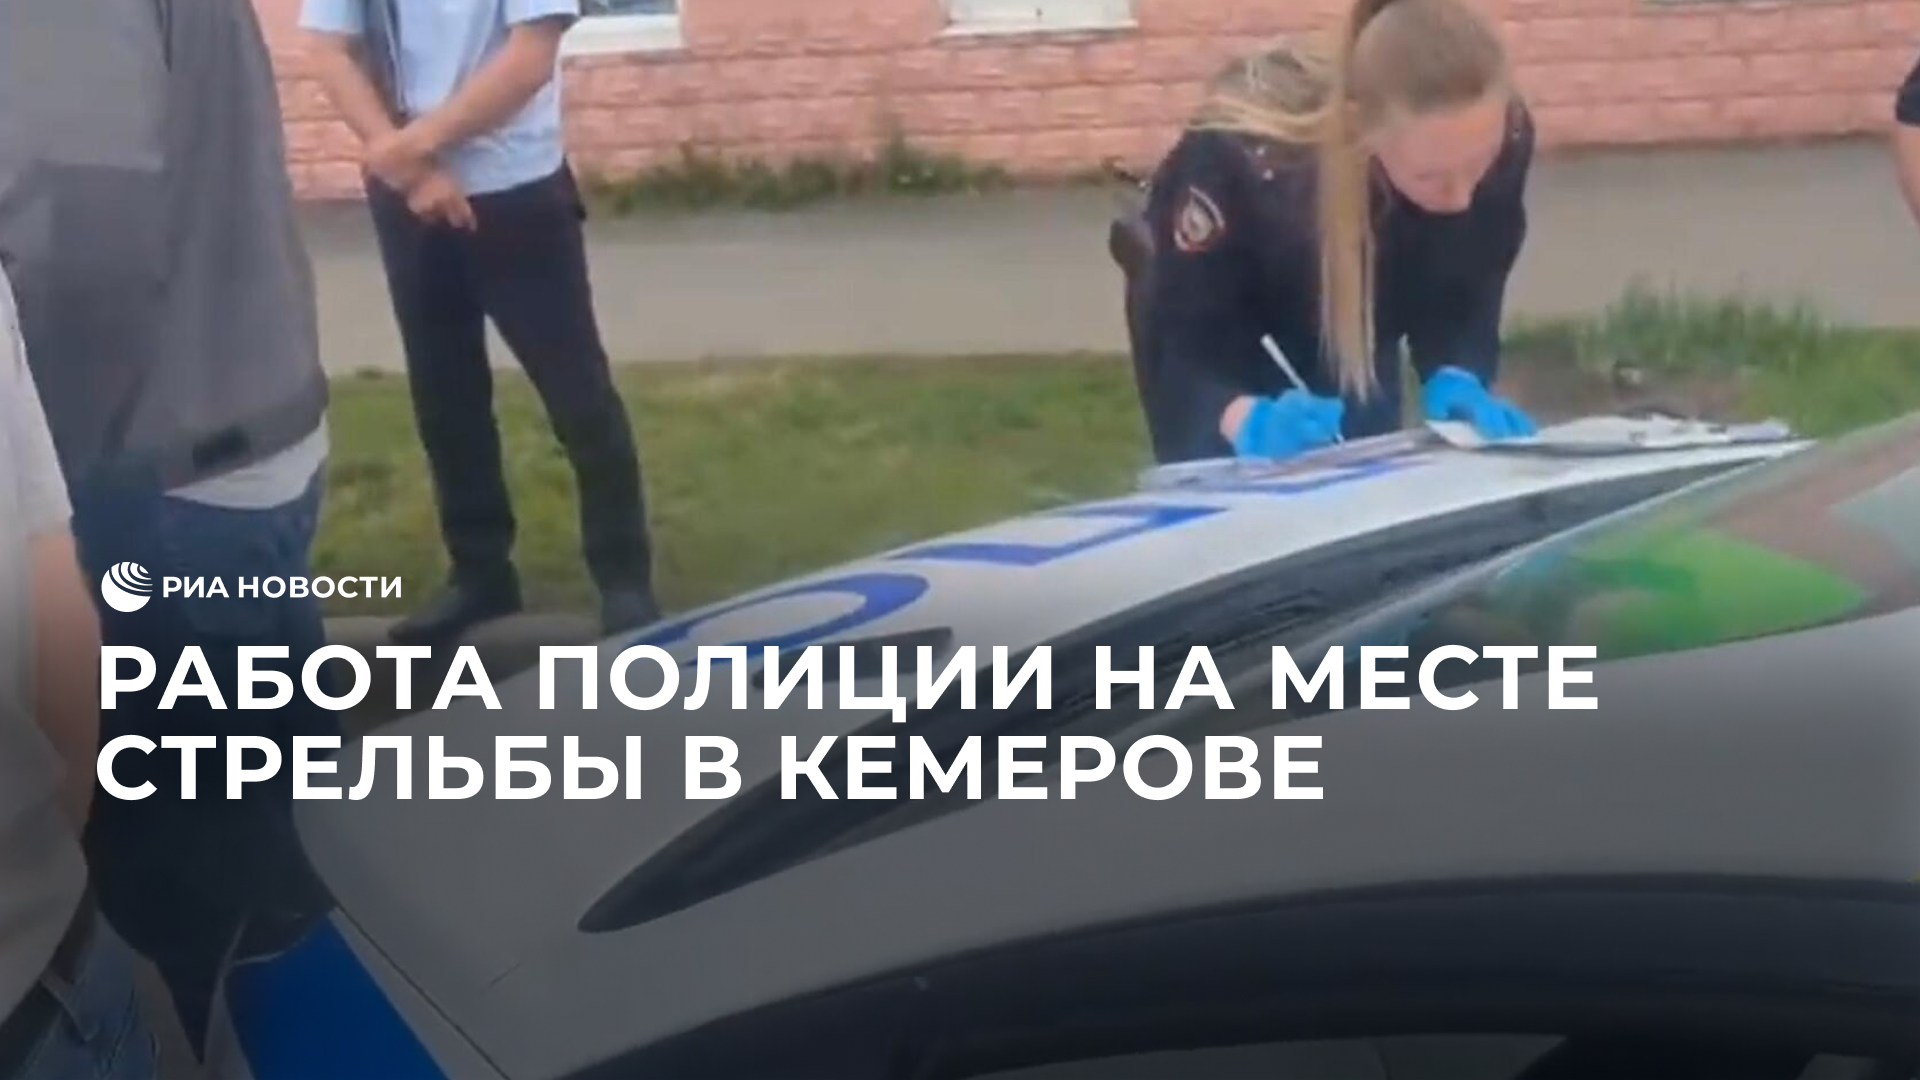 Работа полиции на месте стрельбы в Кемерове